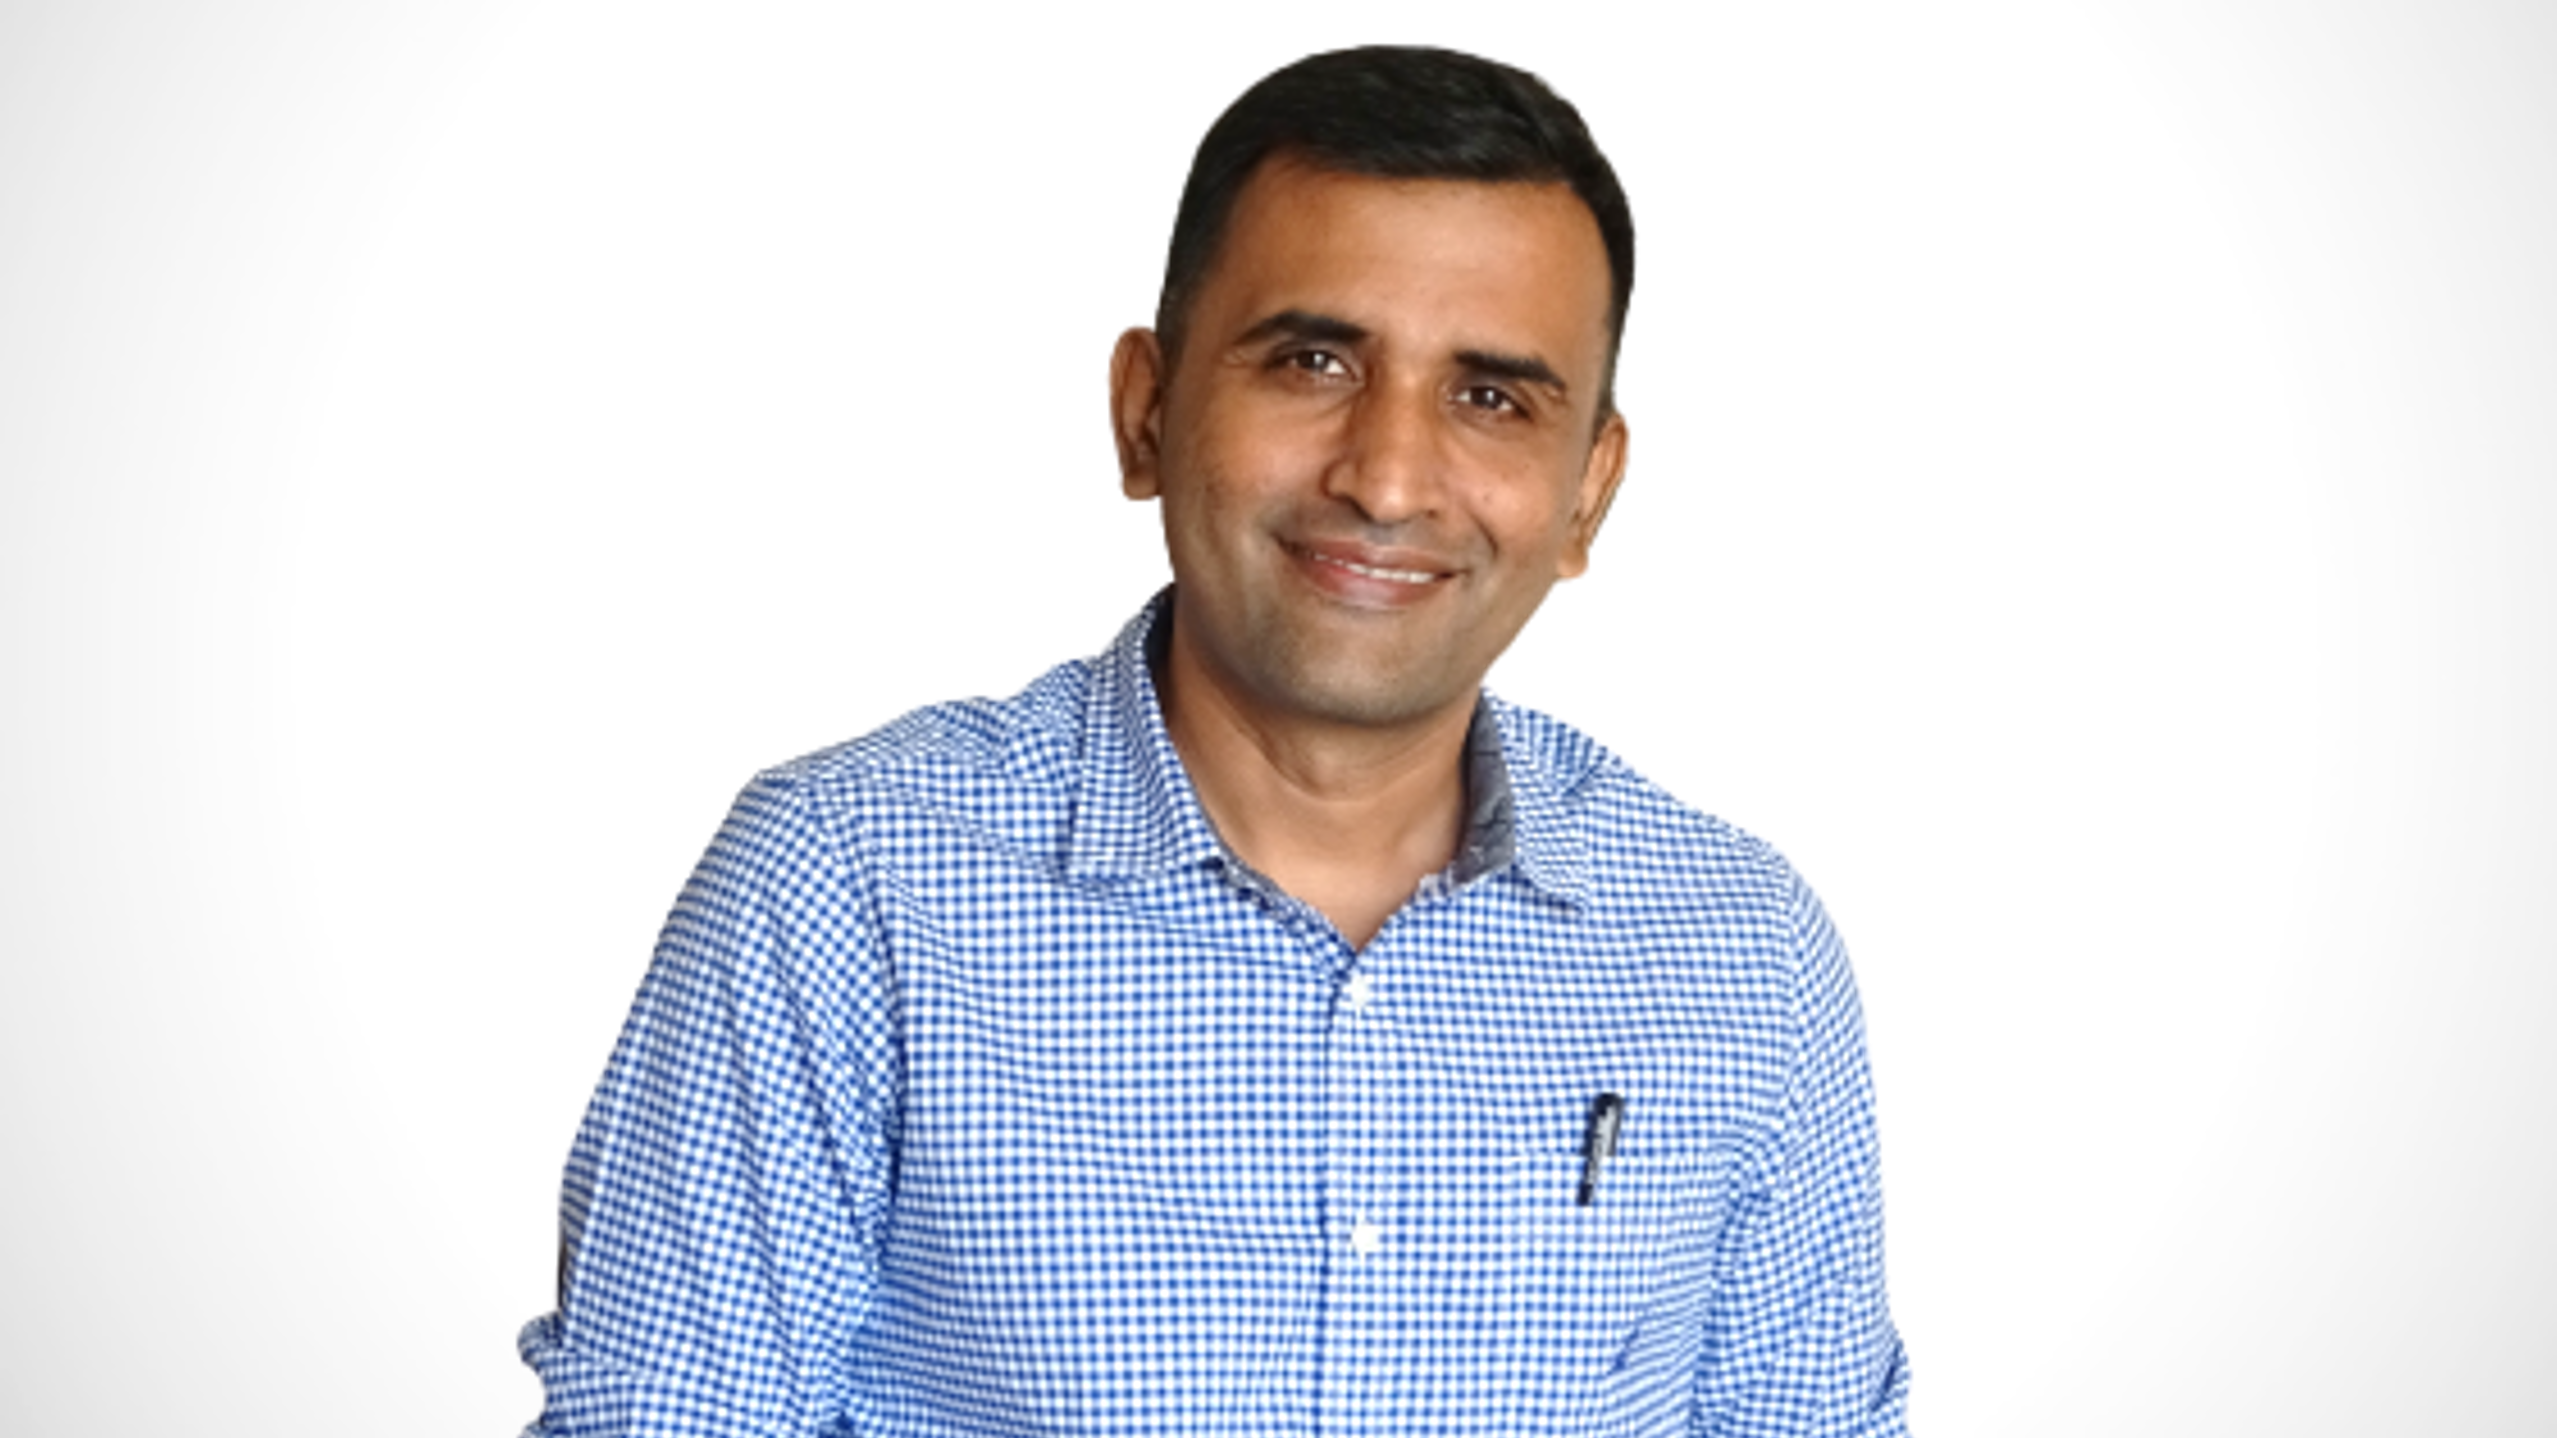 Vinay Subramanyam, Senior Director of Marketing, India and South Asia